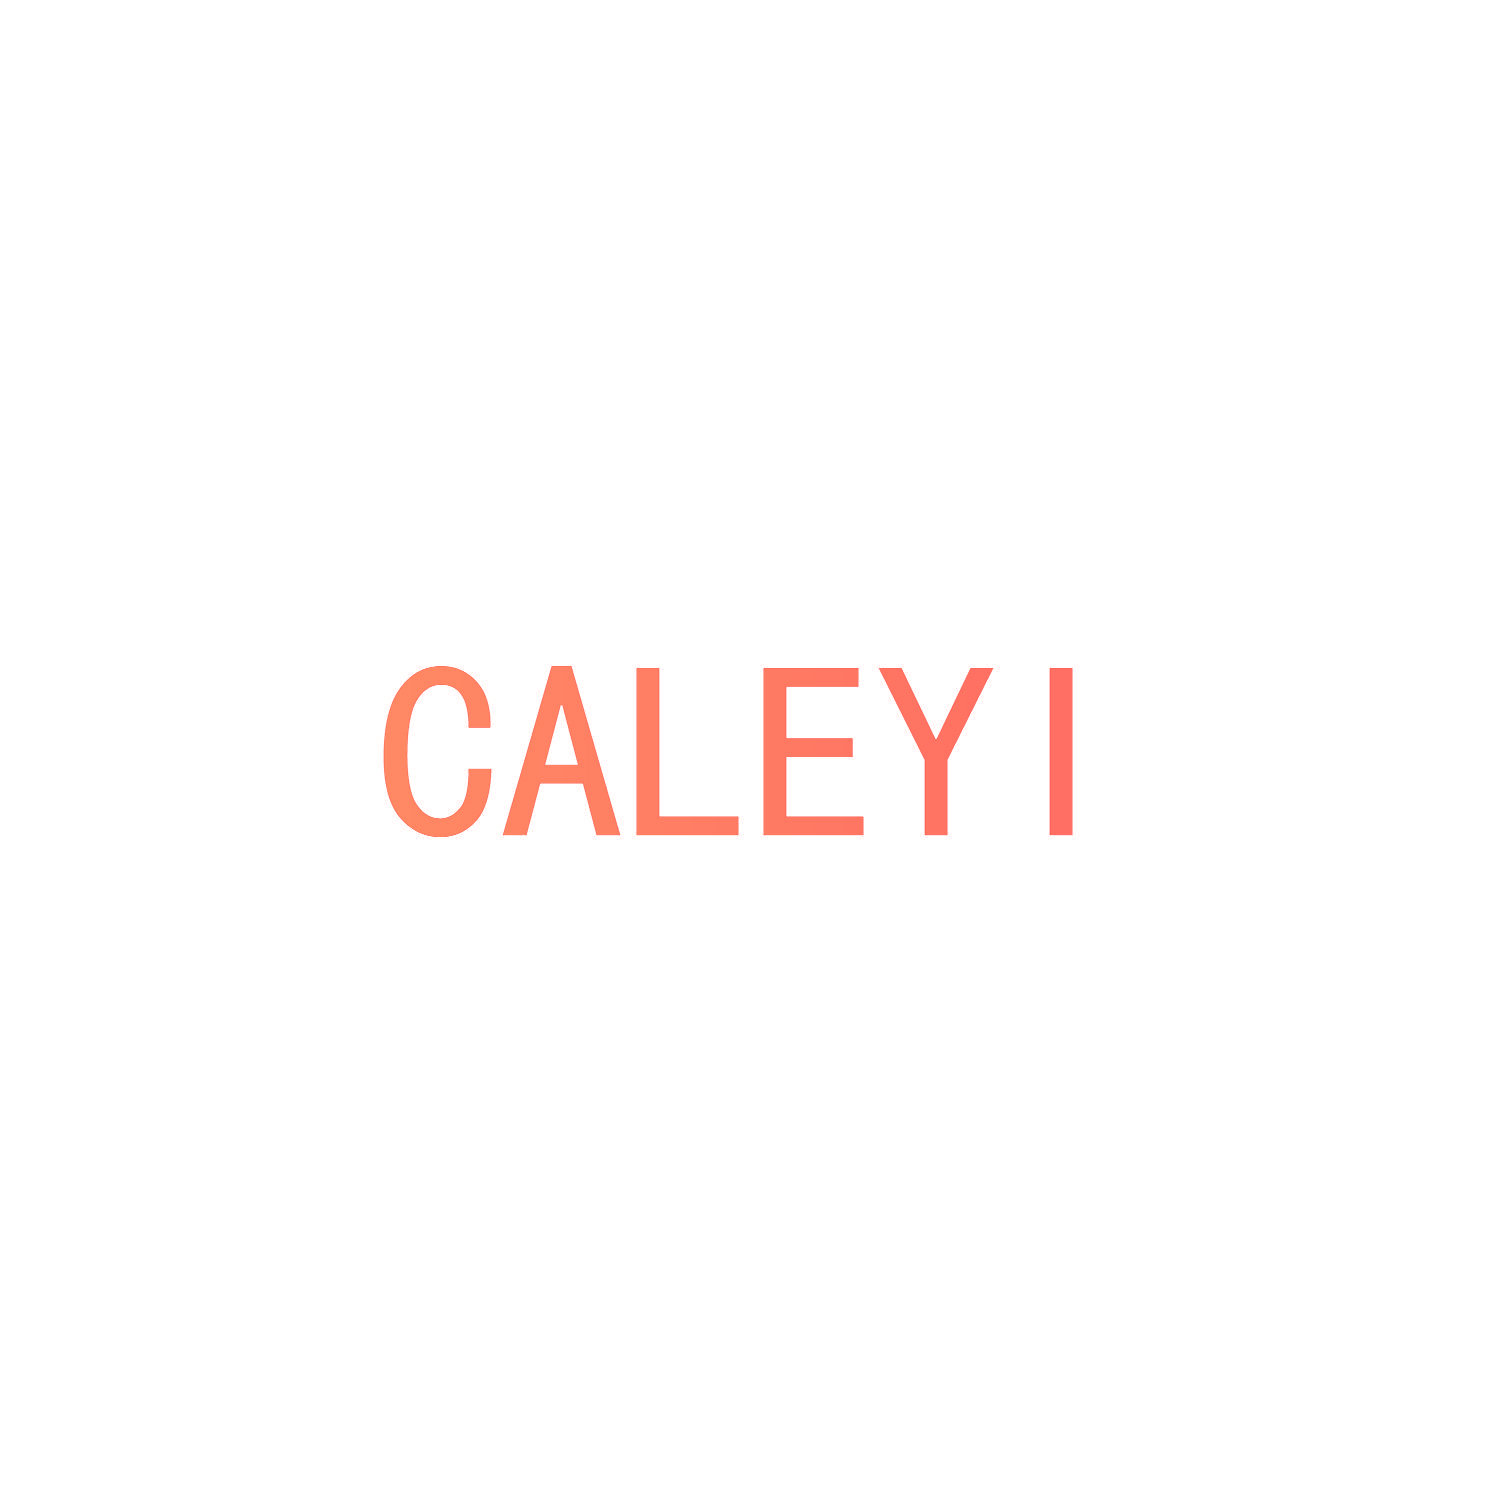 CALEYI